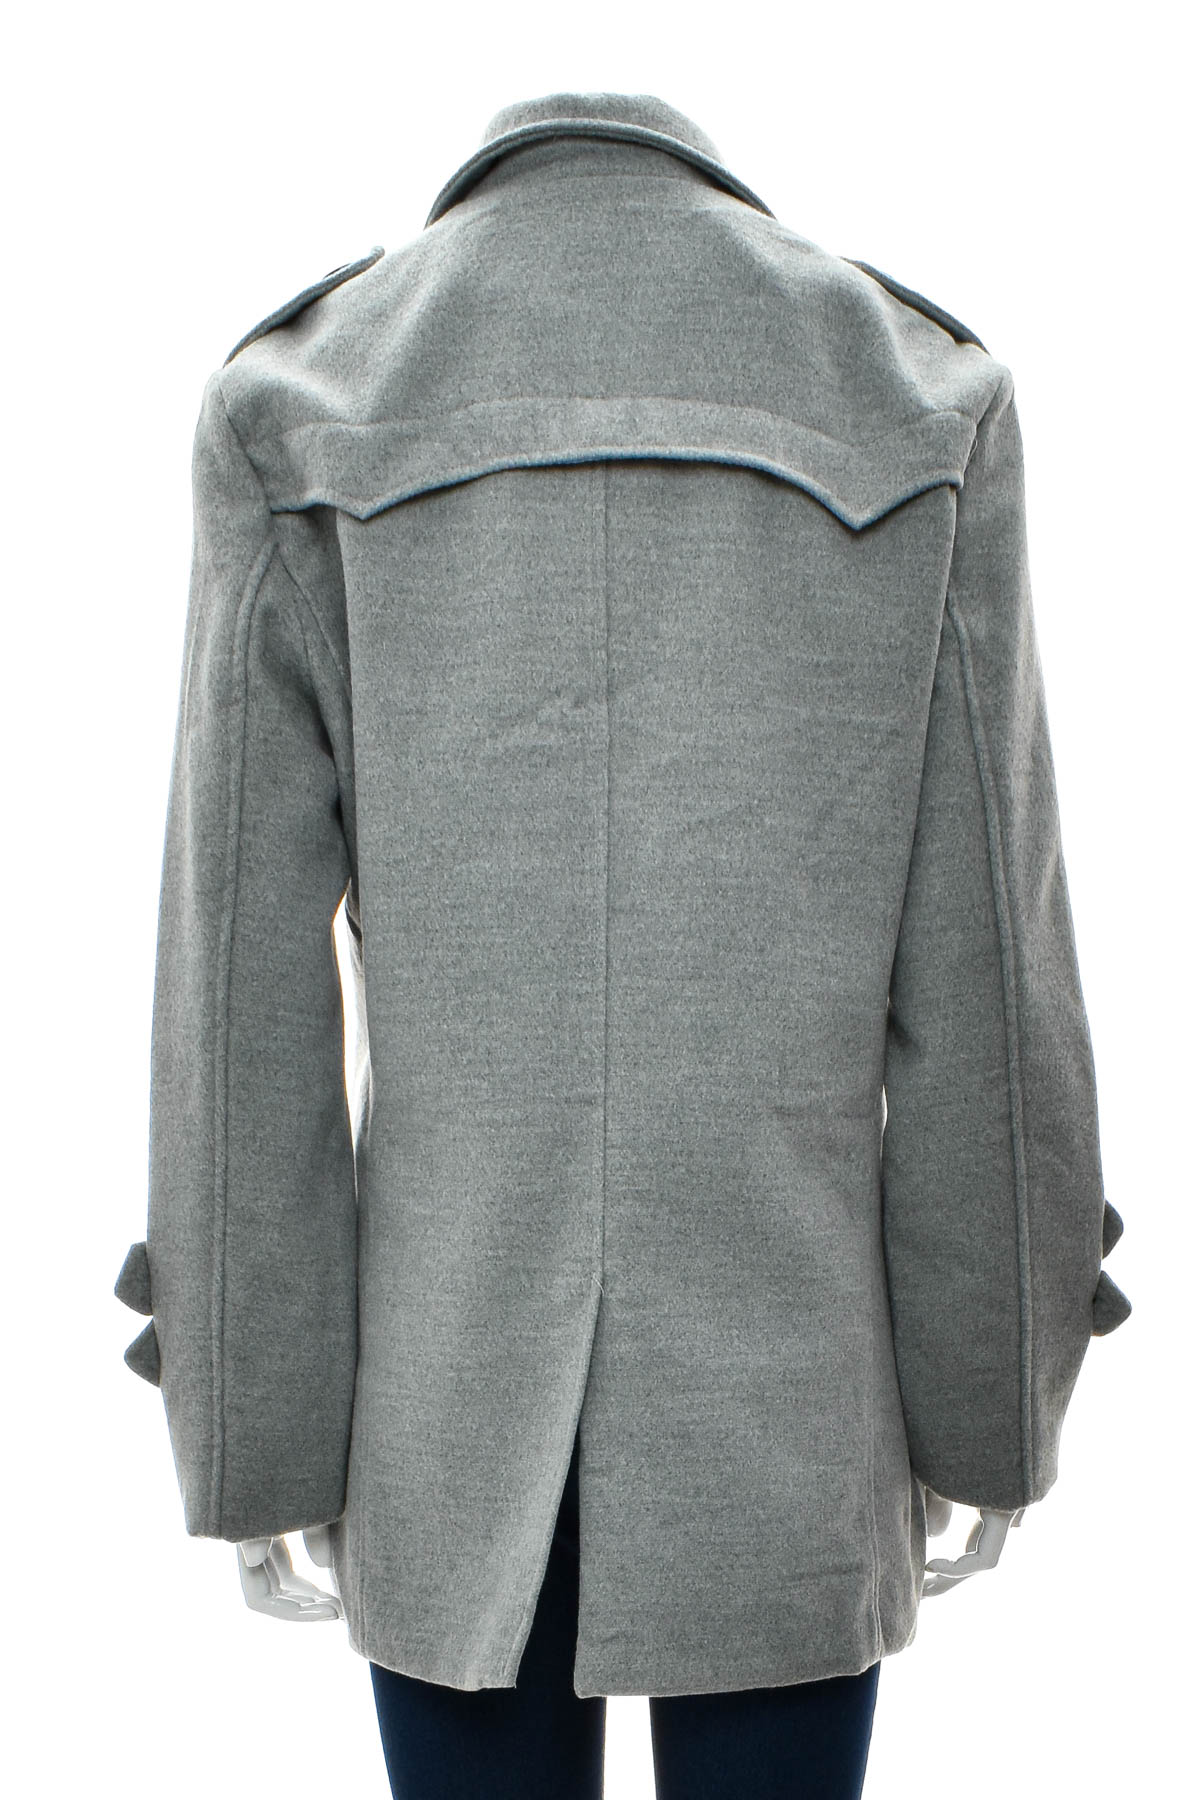 Women's coat - Muxinsole - 1